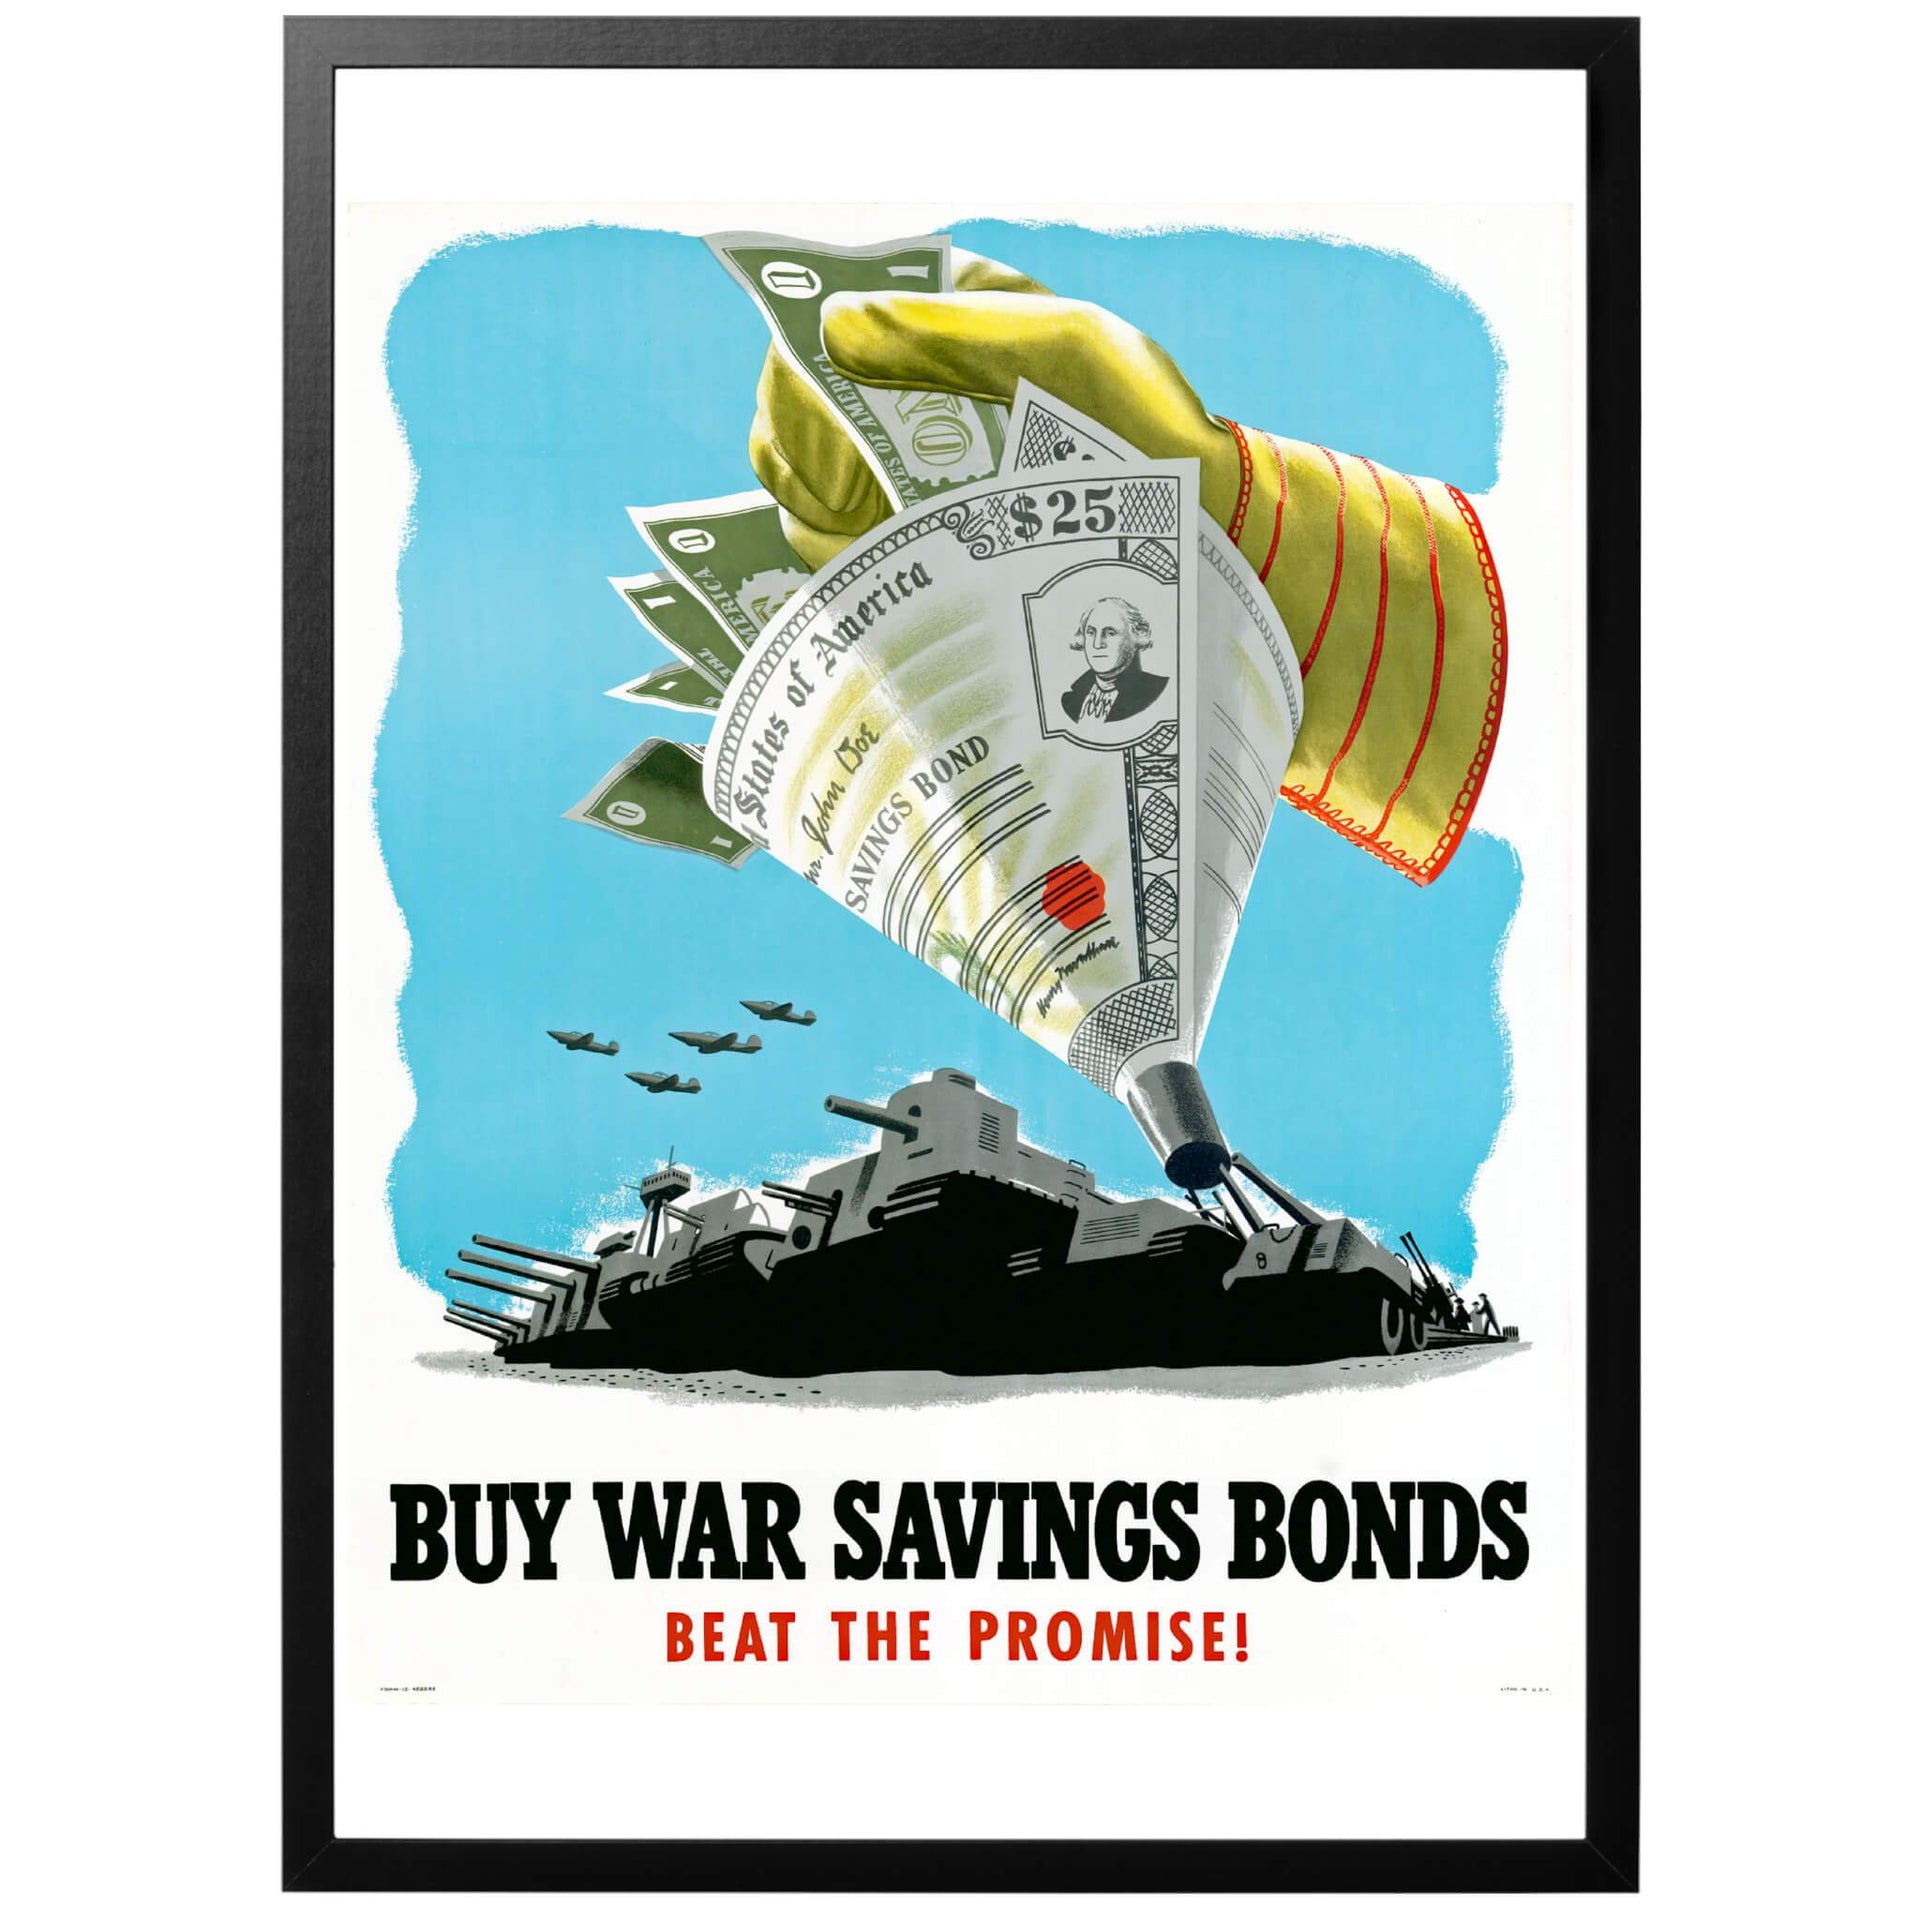 Buy war saving bonds - Beat the promise! -Köp krigsobligationer - slå löftet! Amerikansk WWII affisch från 1941. Välj att köpa postern som den är, eller välj till ram och få hem den inramad och klar! Vi skickar med PostNord, frakt 59 kr - fraktfritt vid ordervärde över 450 kr!